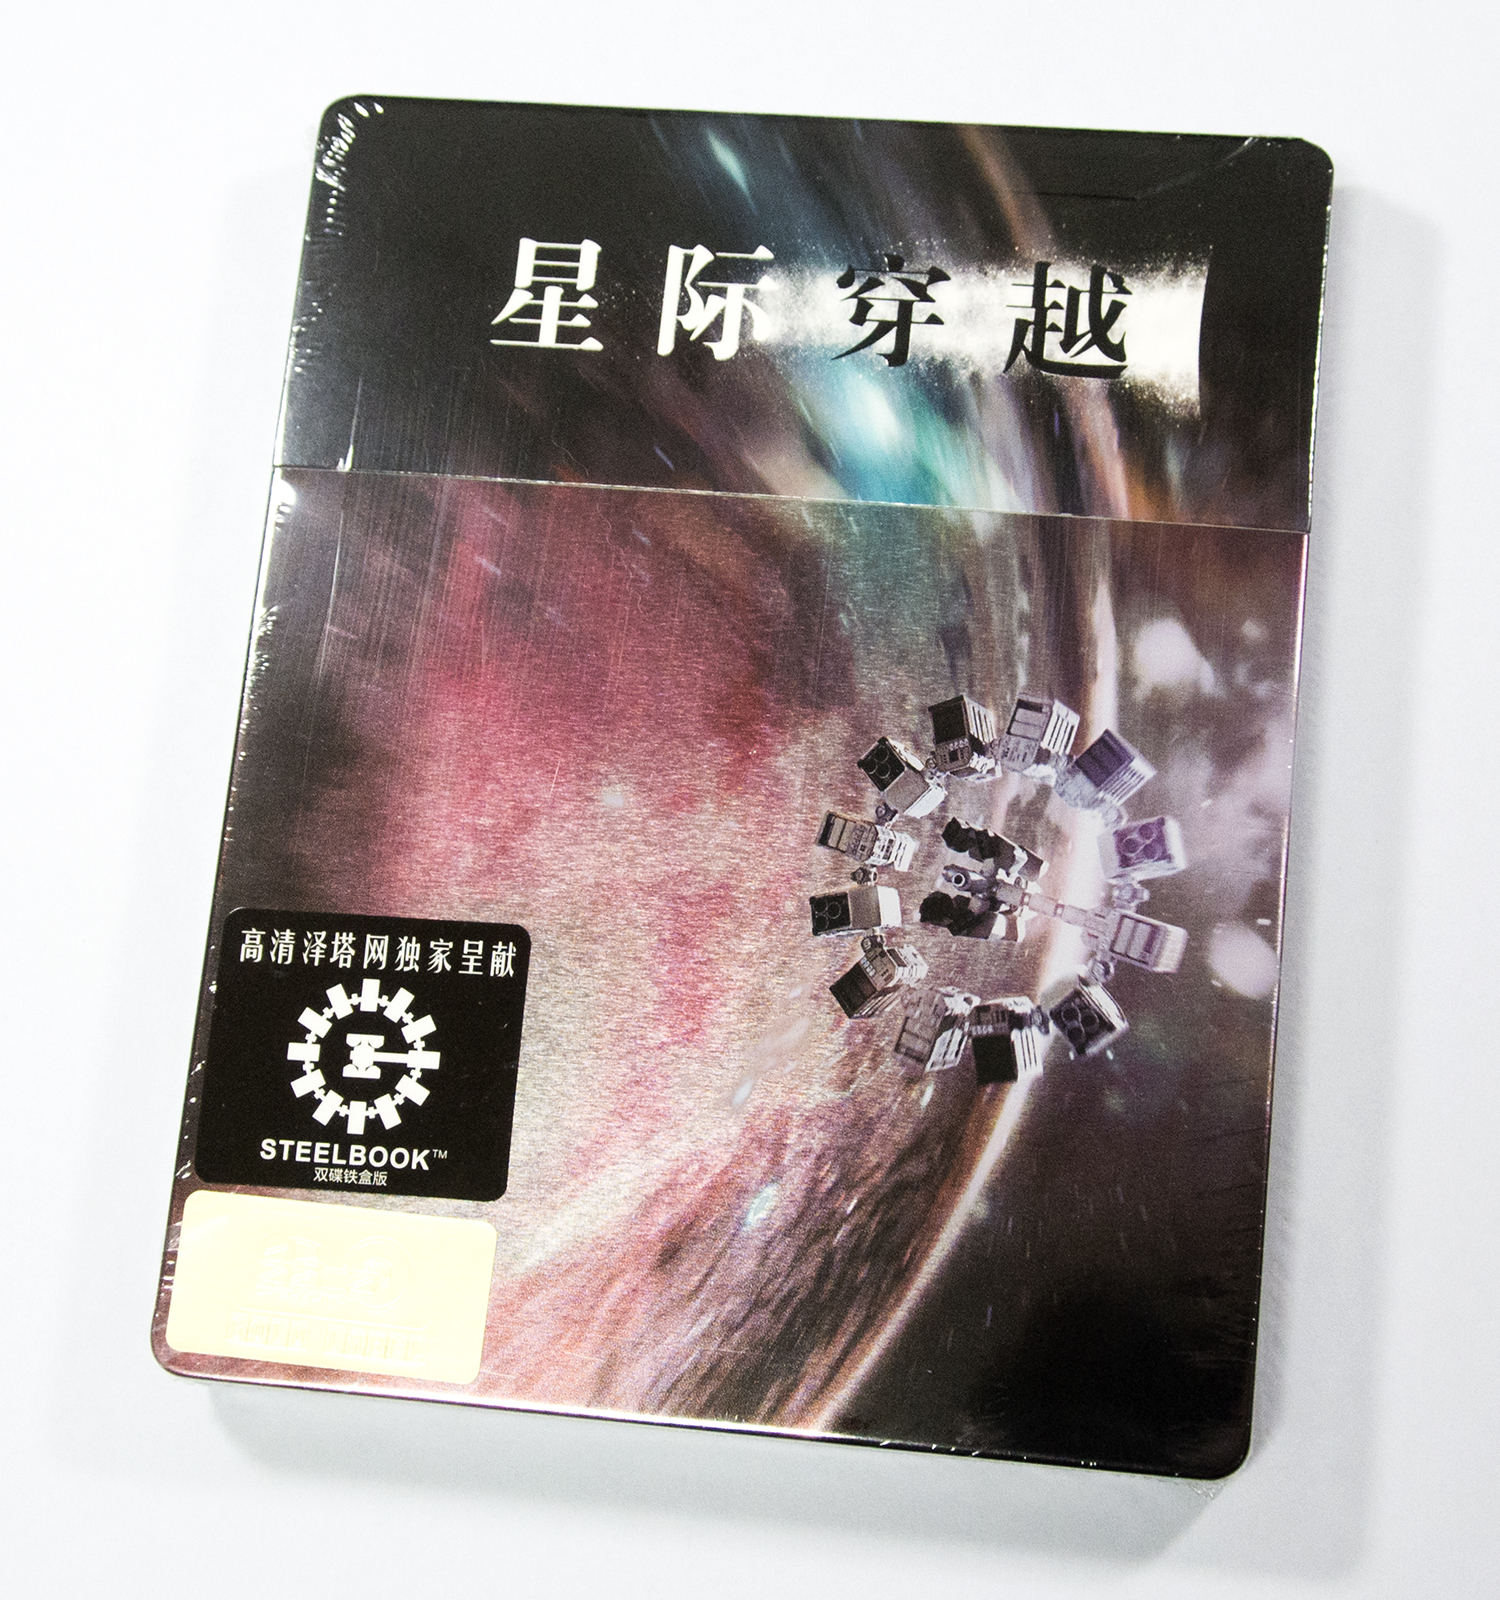 Interstellar HDzeta steelbook